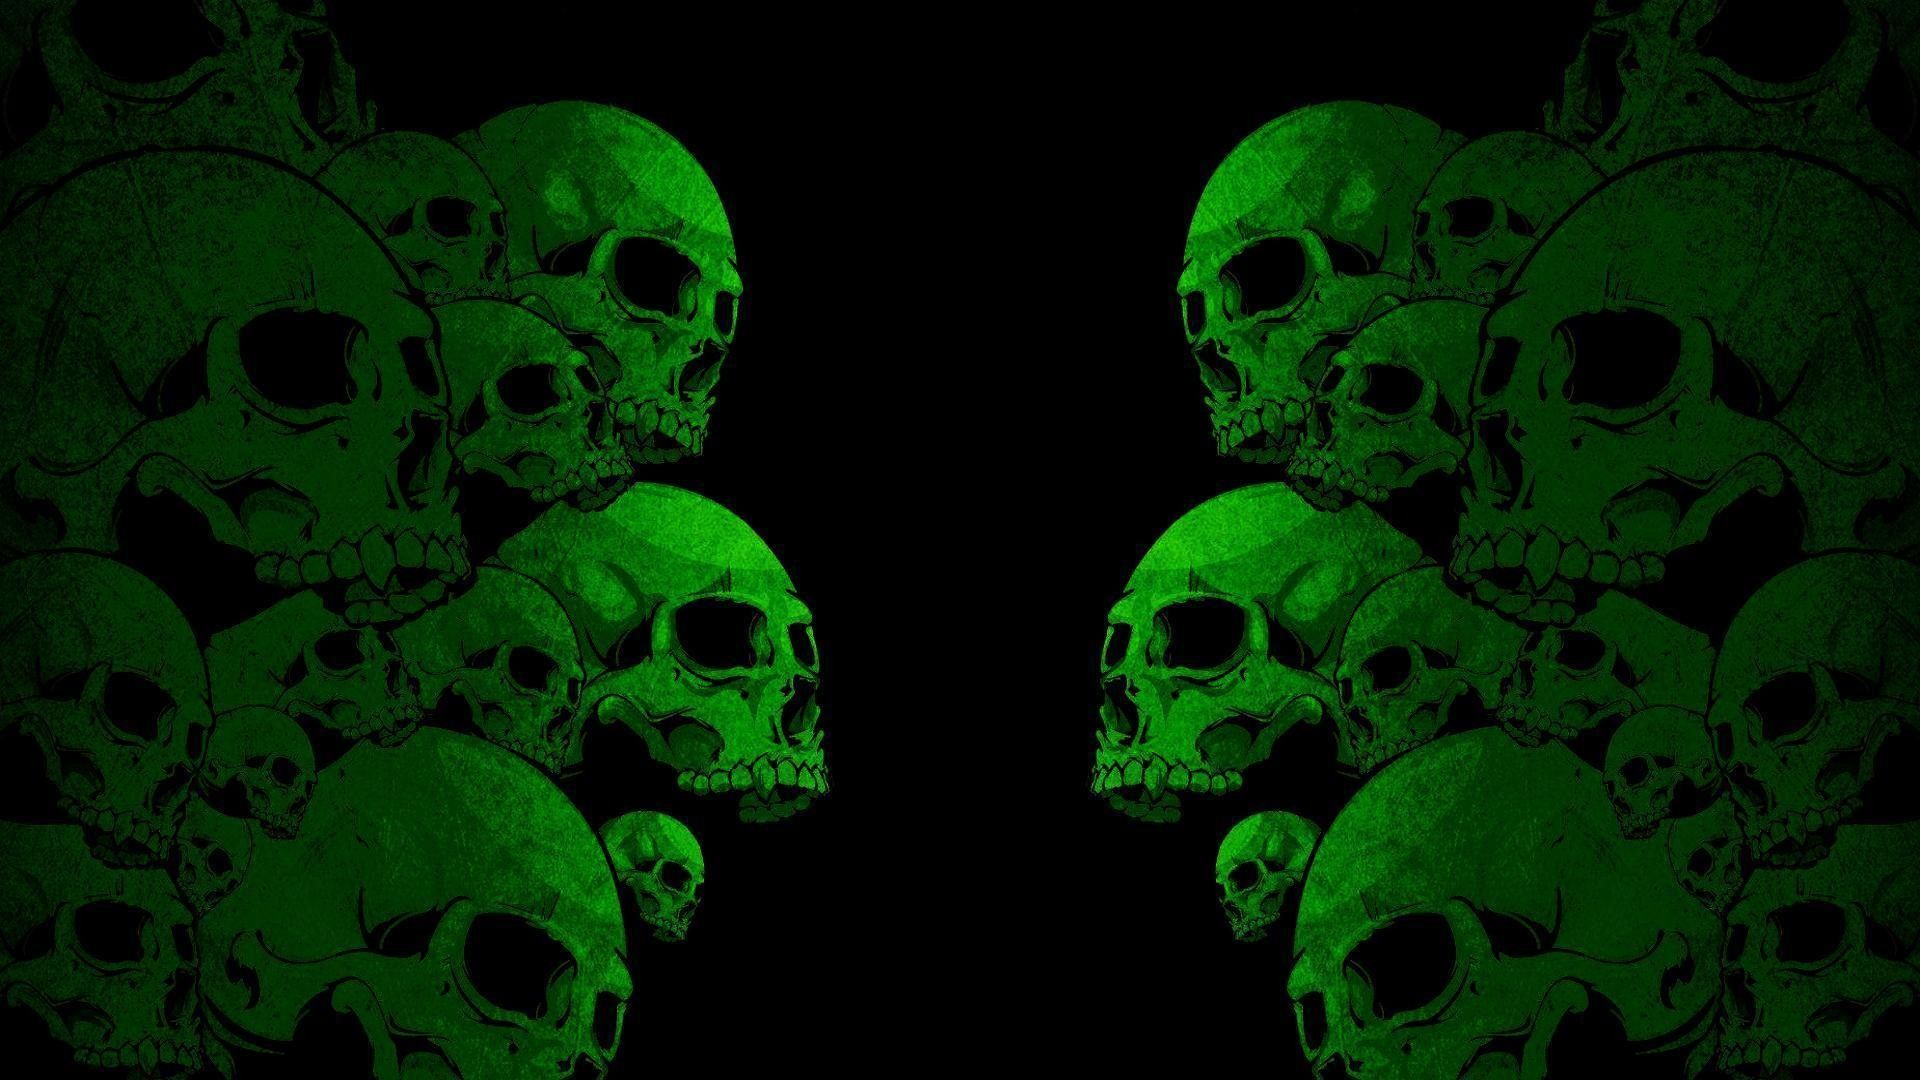 Với đôi tai nghe màu xanh kỳ quặc trang trí trên hình nền, bạn sẽ mang lại sự sống động và phong cách cho màn hình máy tính của mình. Bộ sưu tập hình nền Green Skull Headphones của chúng tôi sẽ mang lại cho bạn sự chinh phục và phong cách độc đáo.